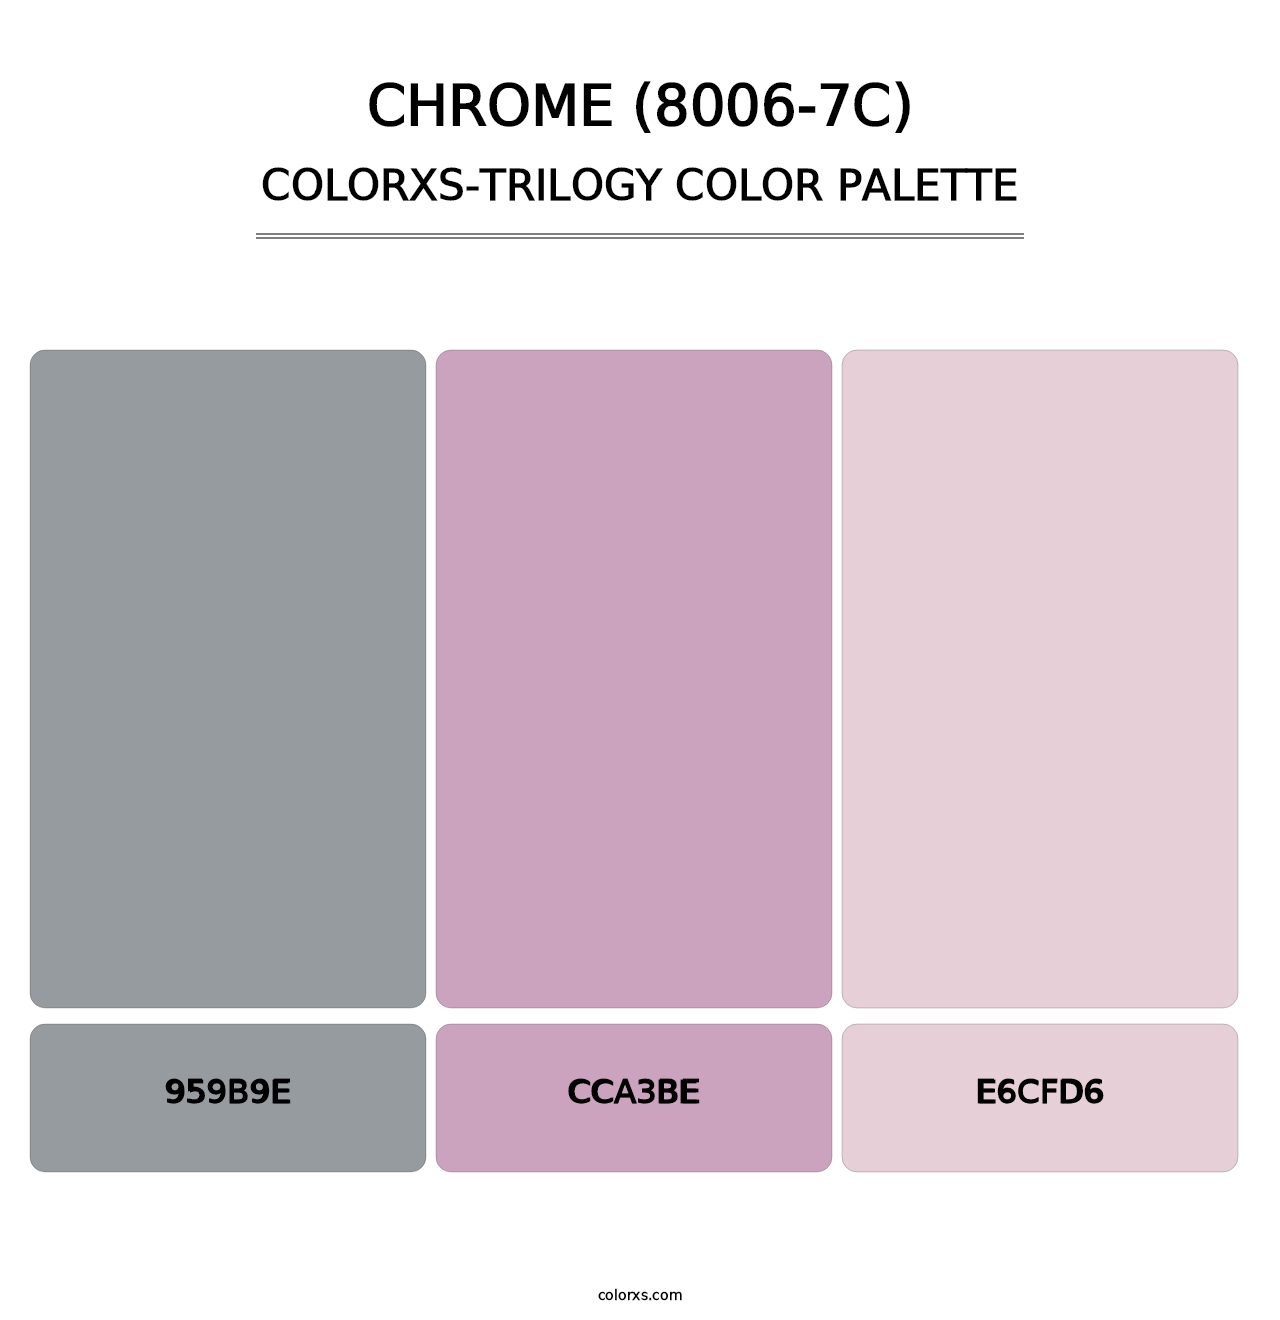 Chrome (8006-7C) - Colorxs Trilogy Palette